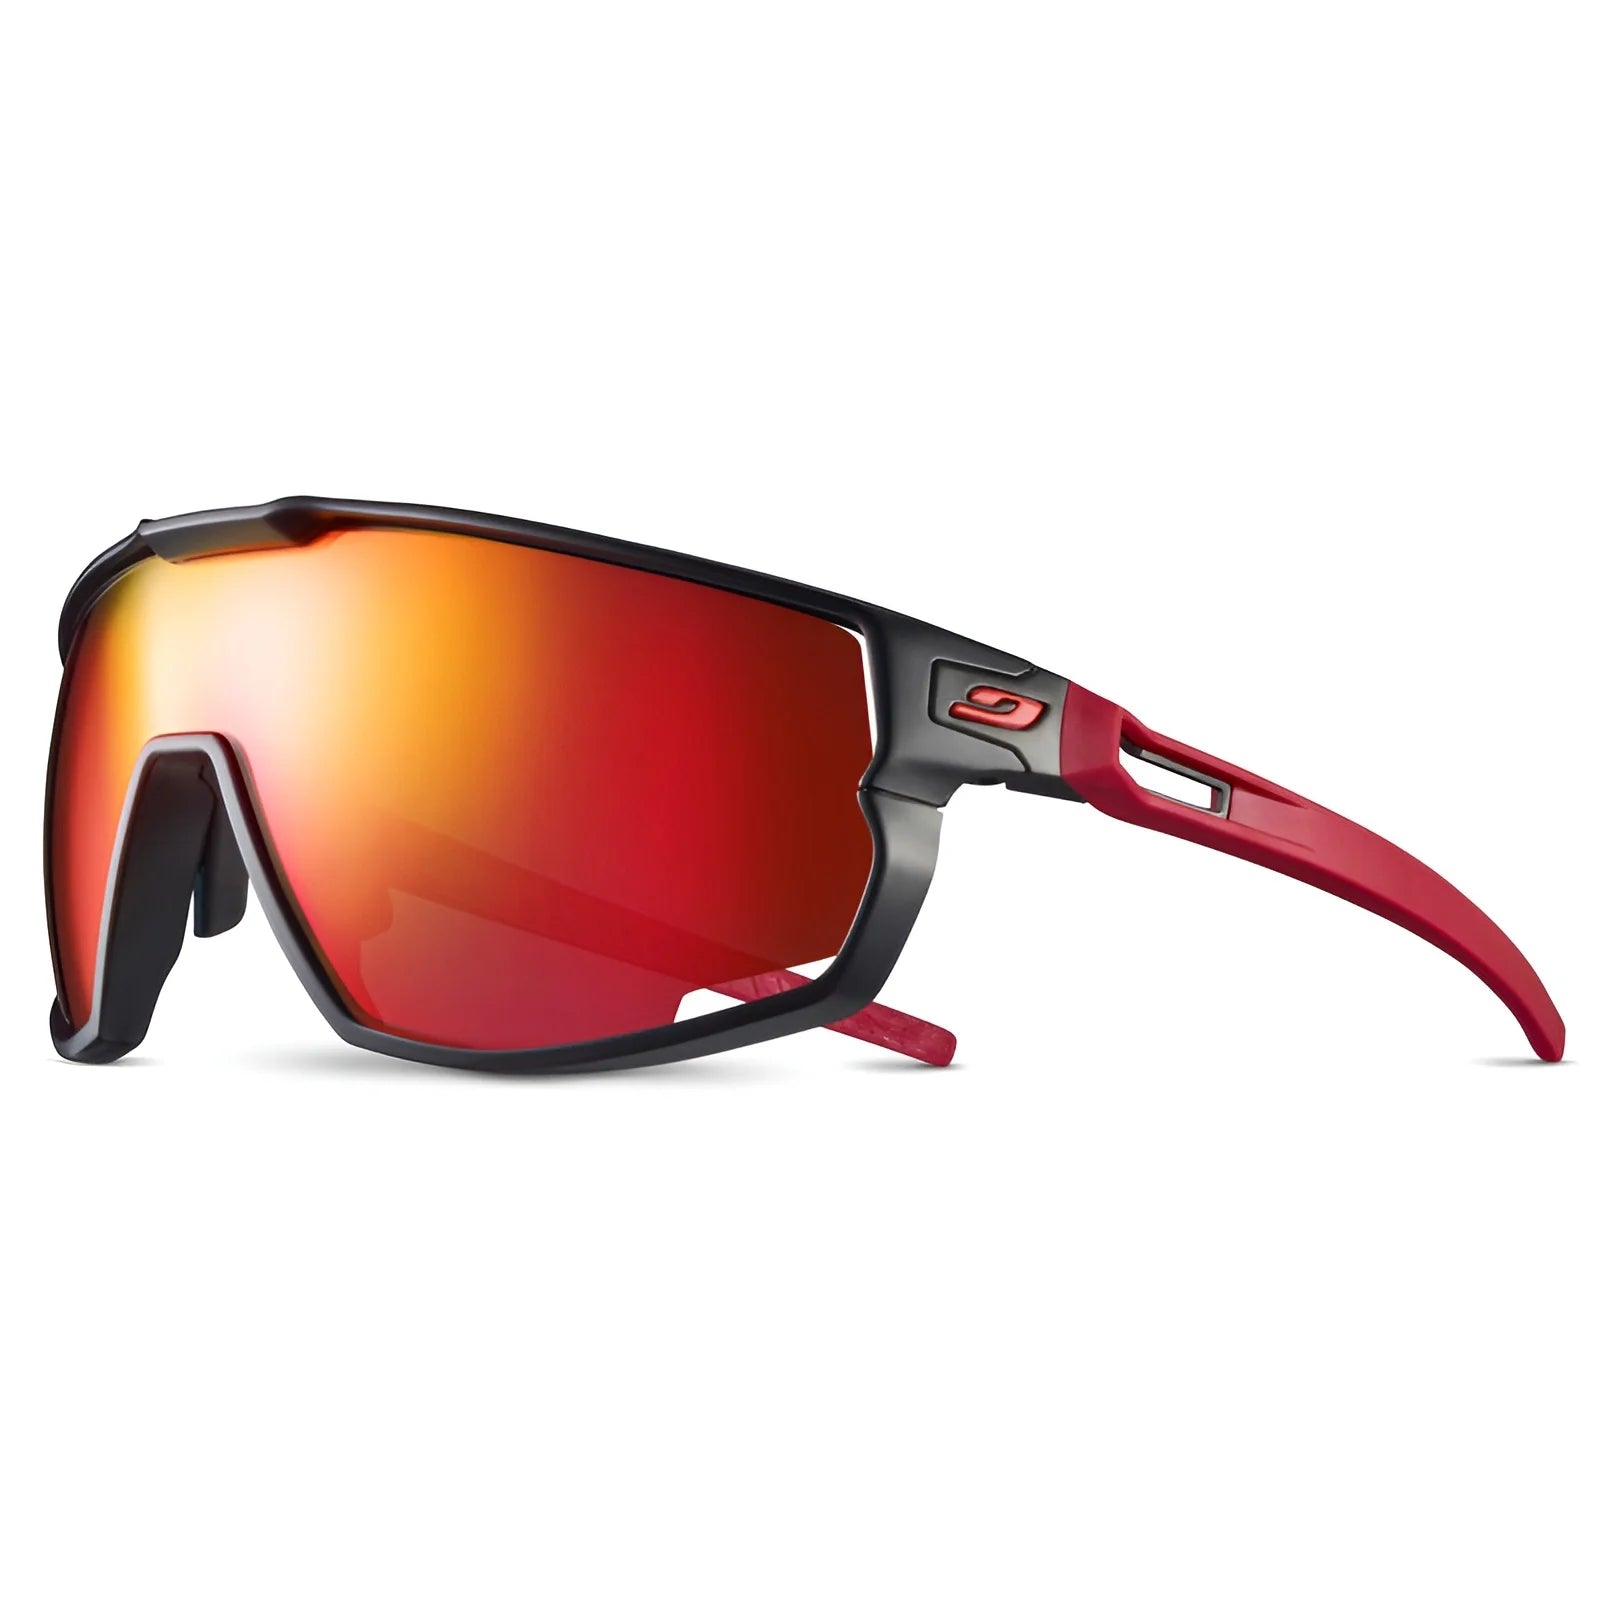 Julbo Rush Sunglasses Black / Red / Spectron 3 (VLT 13%)